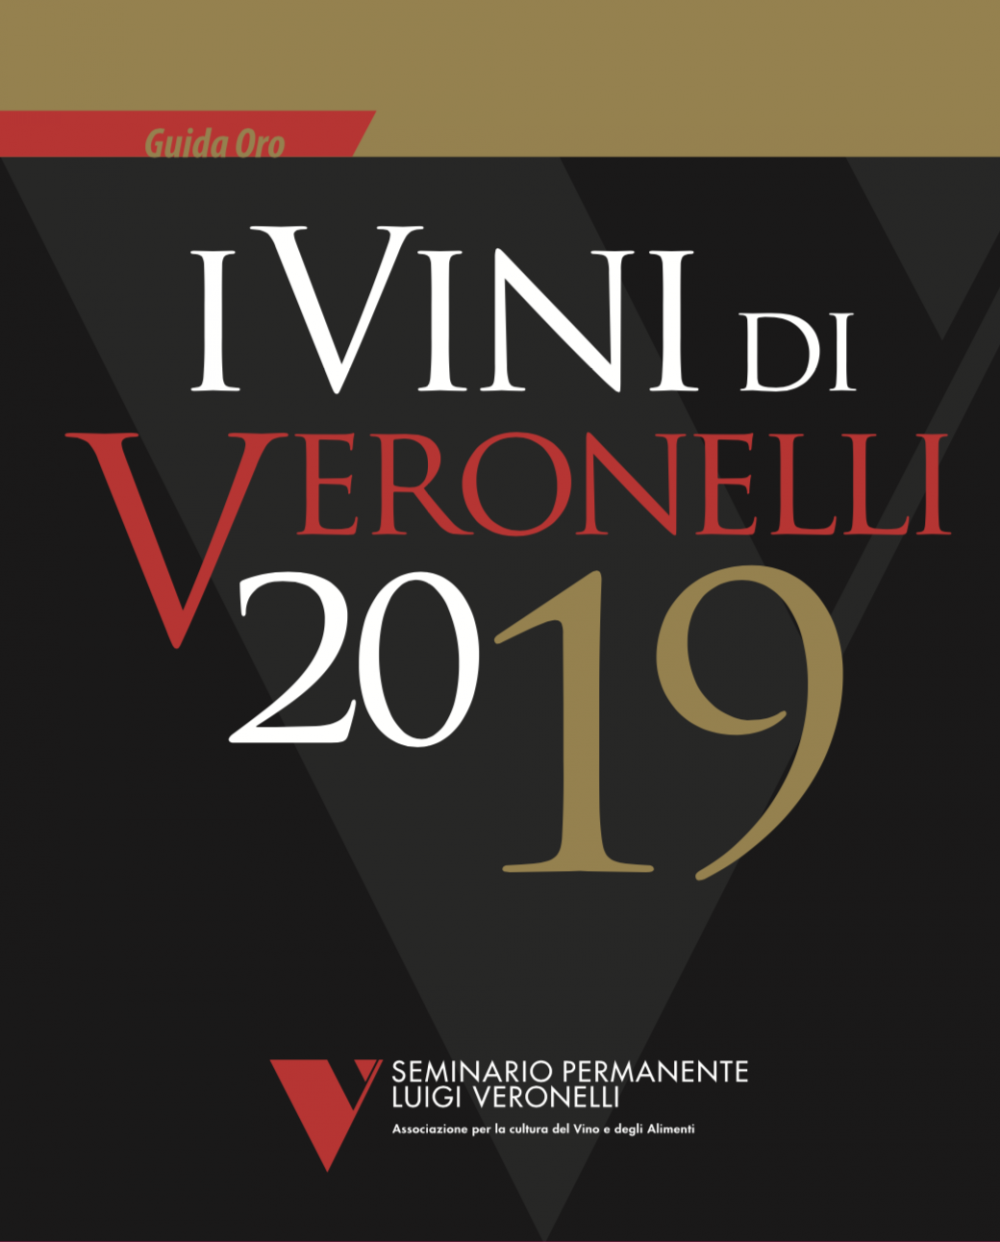 I Vini di Veronelli 2019, la guida della Fondazione Veronelli